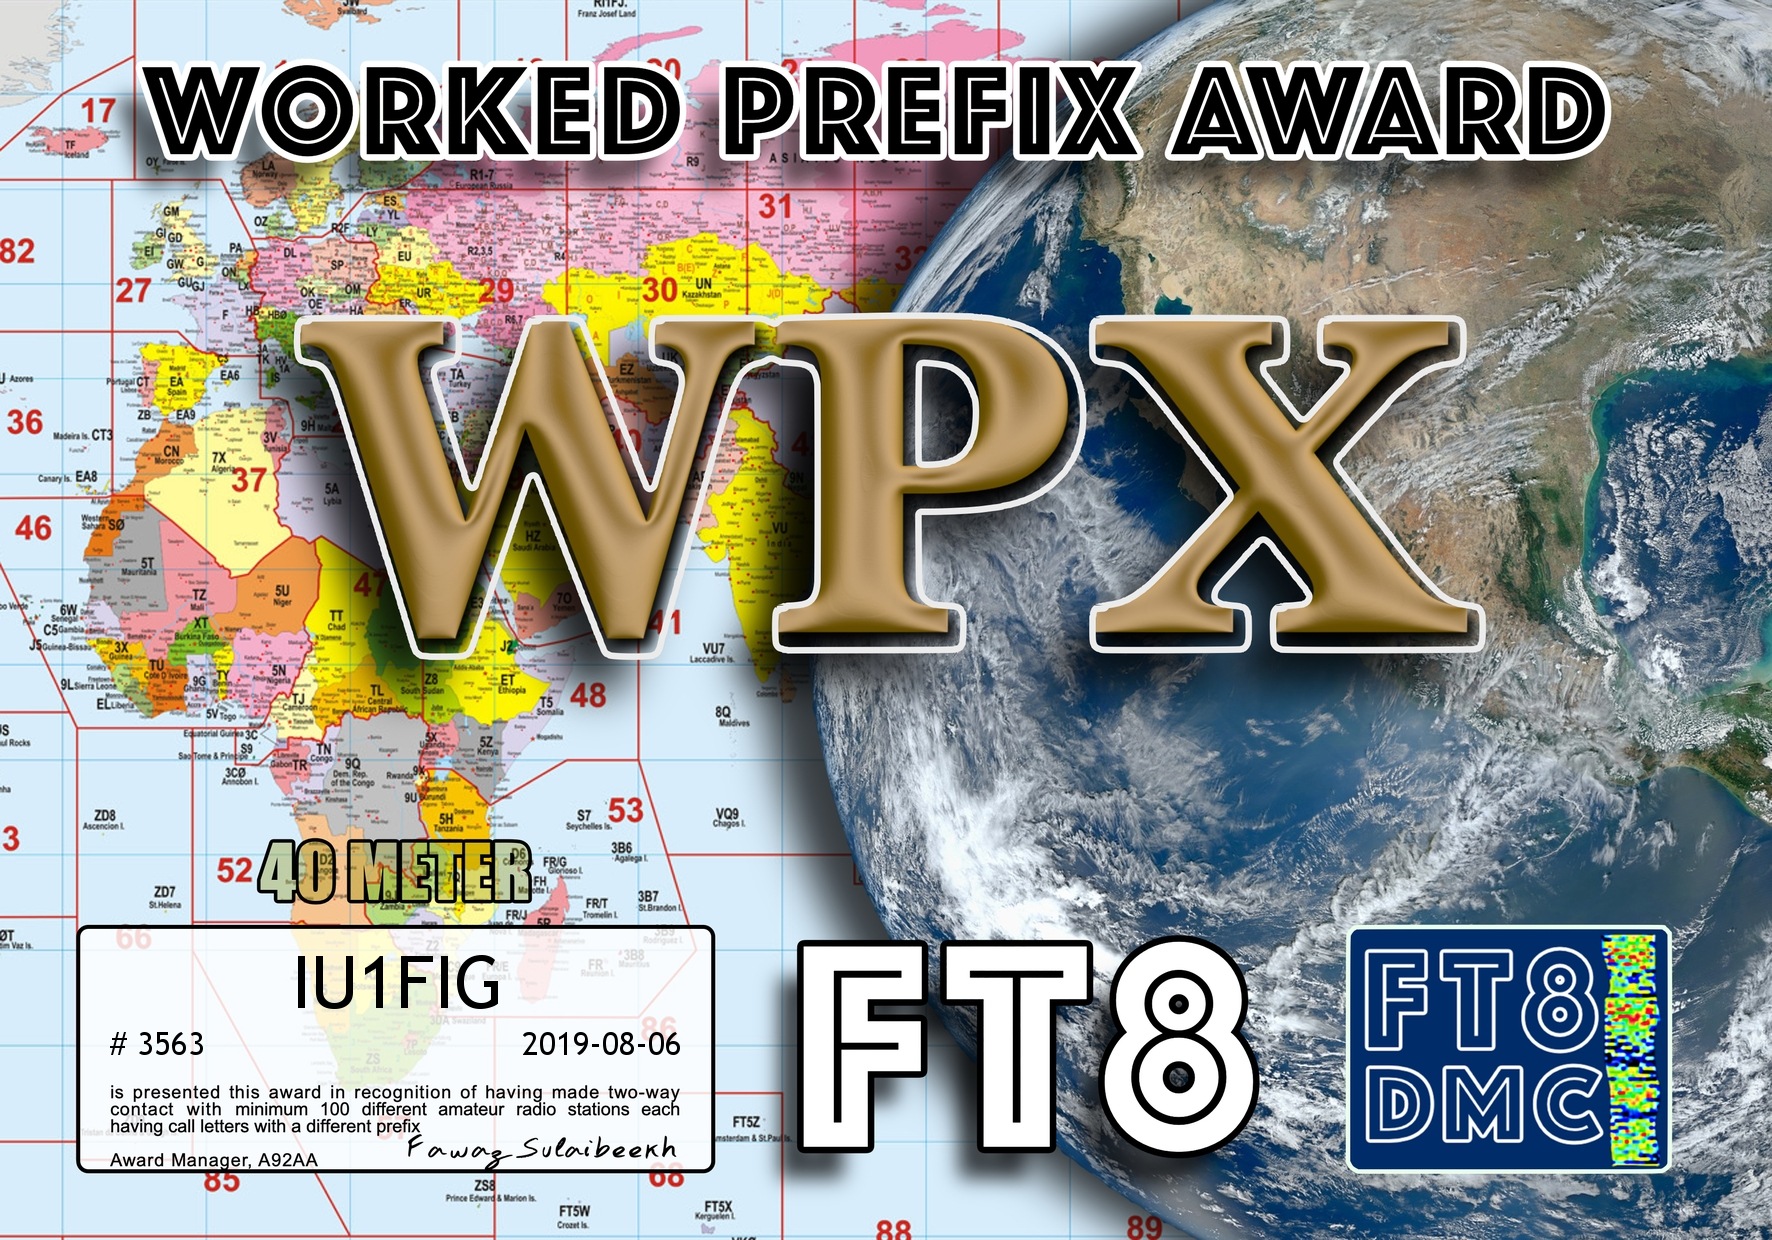 IU1FIG-WPX40-100.jpg